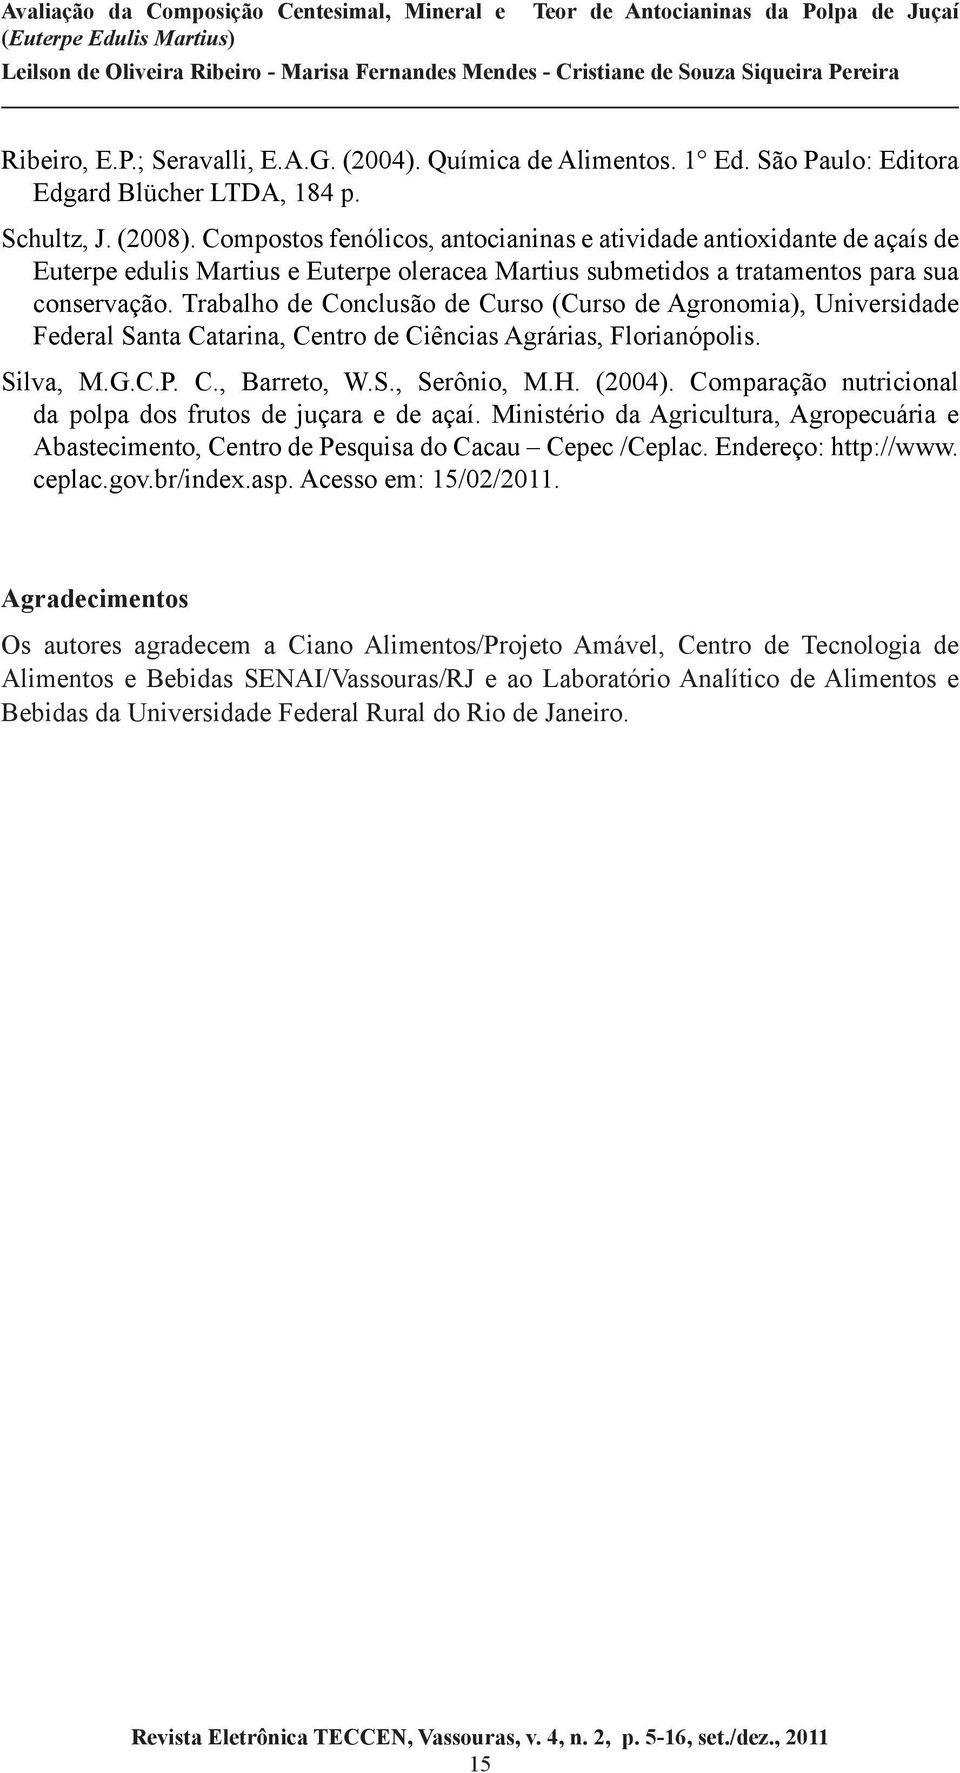 Trabalho de Conclusão de Curso (Curso de Agronomia), Universidade Federal Santa Catarina, Centro de Ciências Agrárias, Florianópolis. Silva, M.G.C.P. C., Barreto, W.S., Serônio, M.H. (2004).